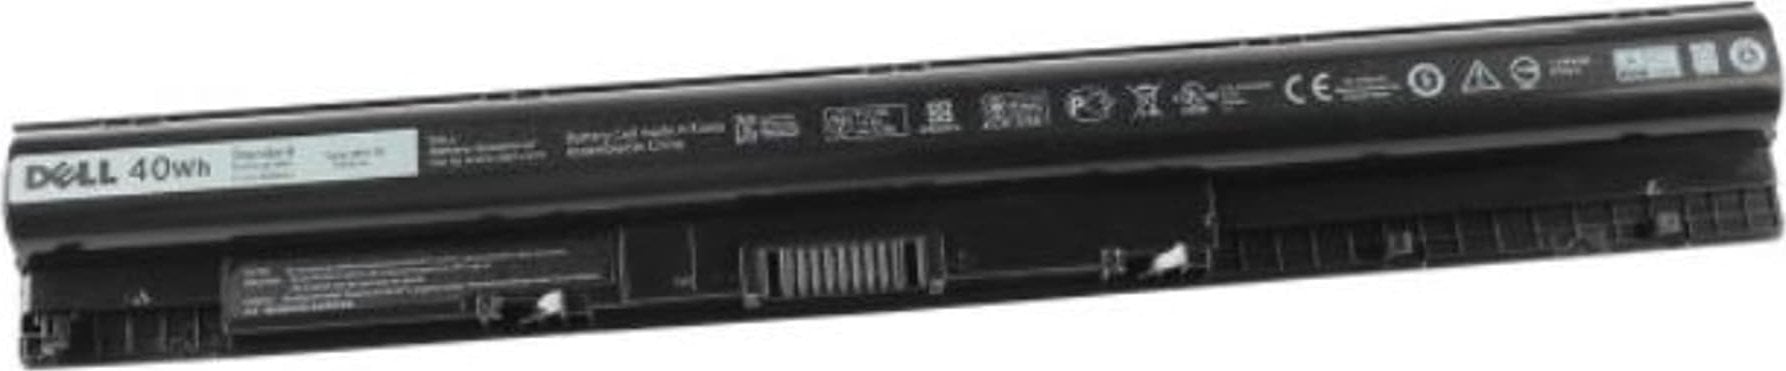 Bateria Dell Battery 4 Cell 40 Whr - 07G07 se traduce in limba romana ca Baterie Dell cu 4 celule de 40 Whr - 07G07.